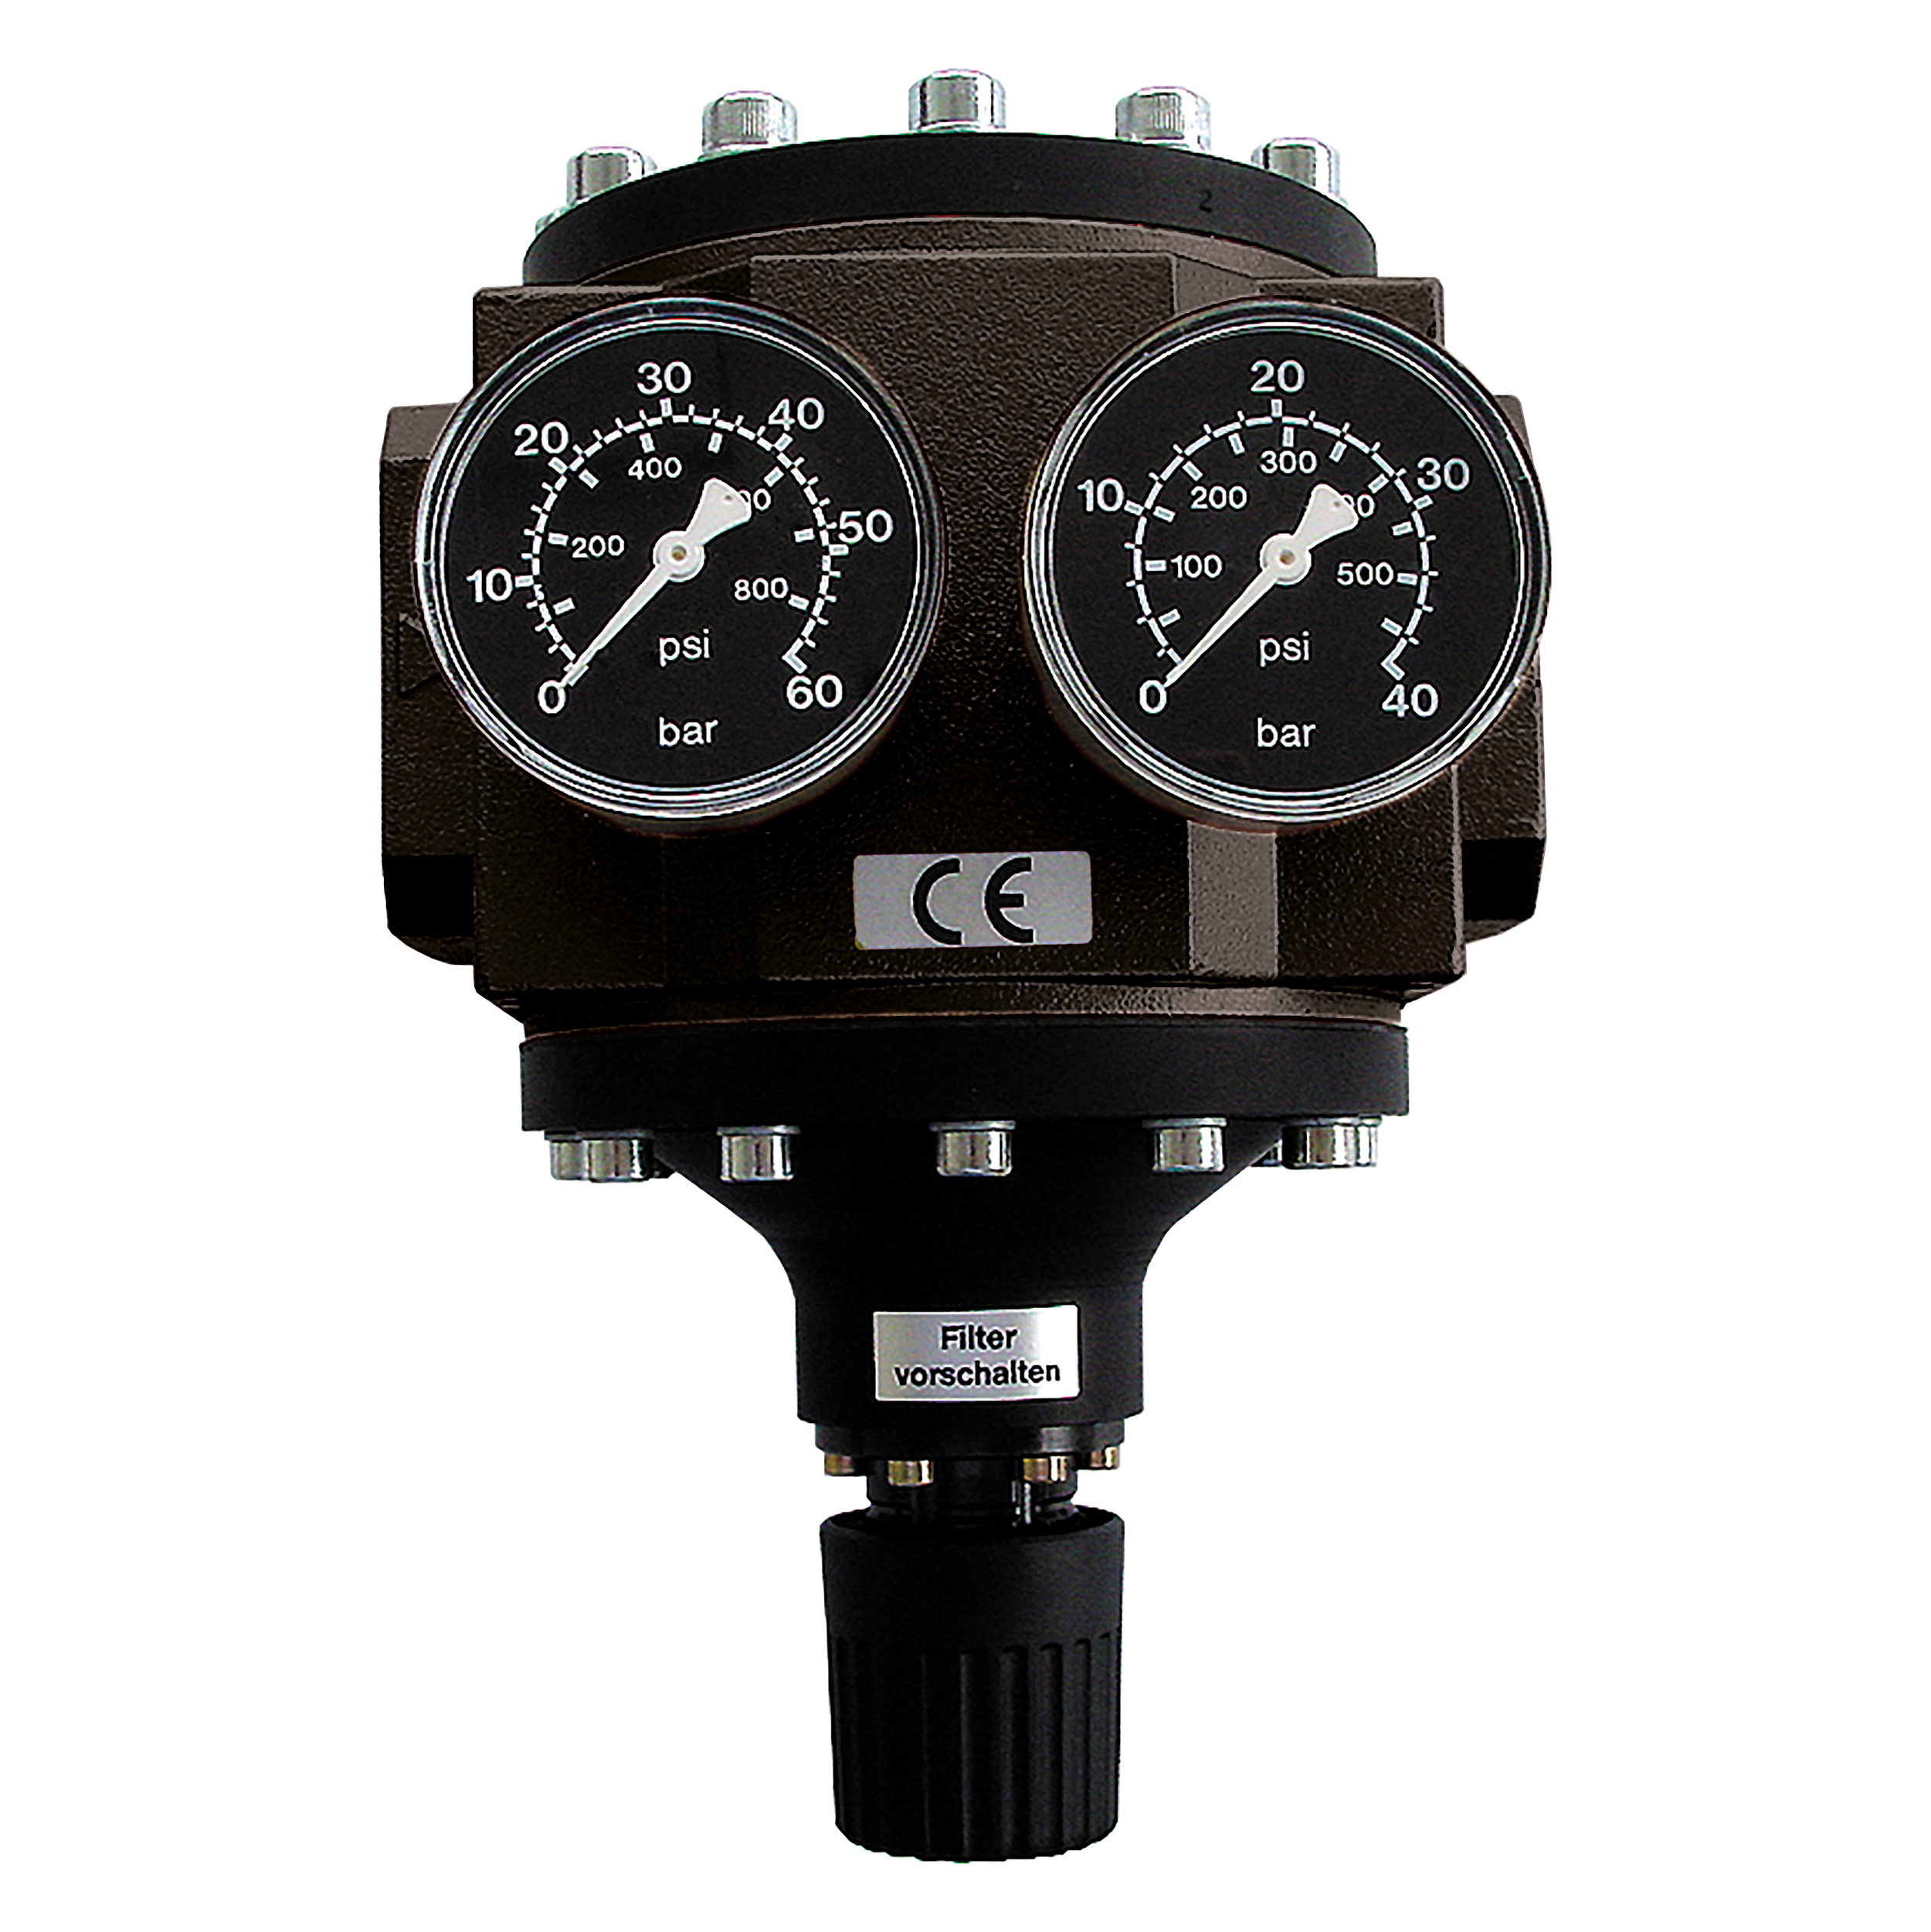 Large pressure regulator standard, BG 90, G1½, 7–232 psi, without gauges